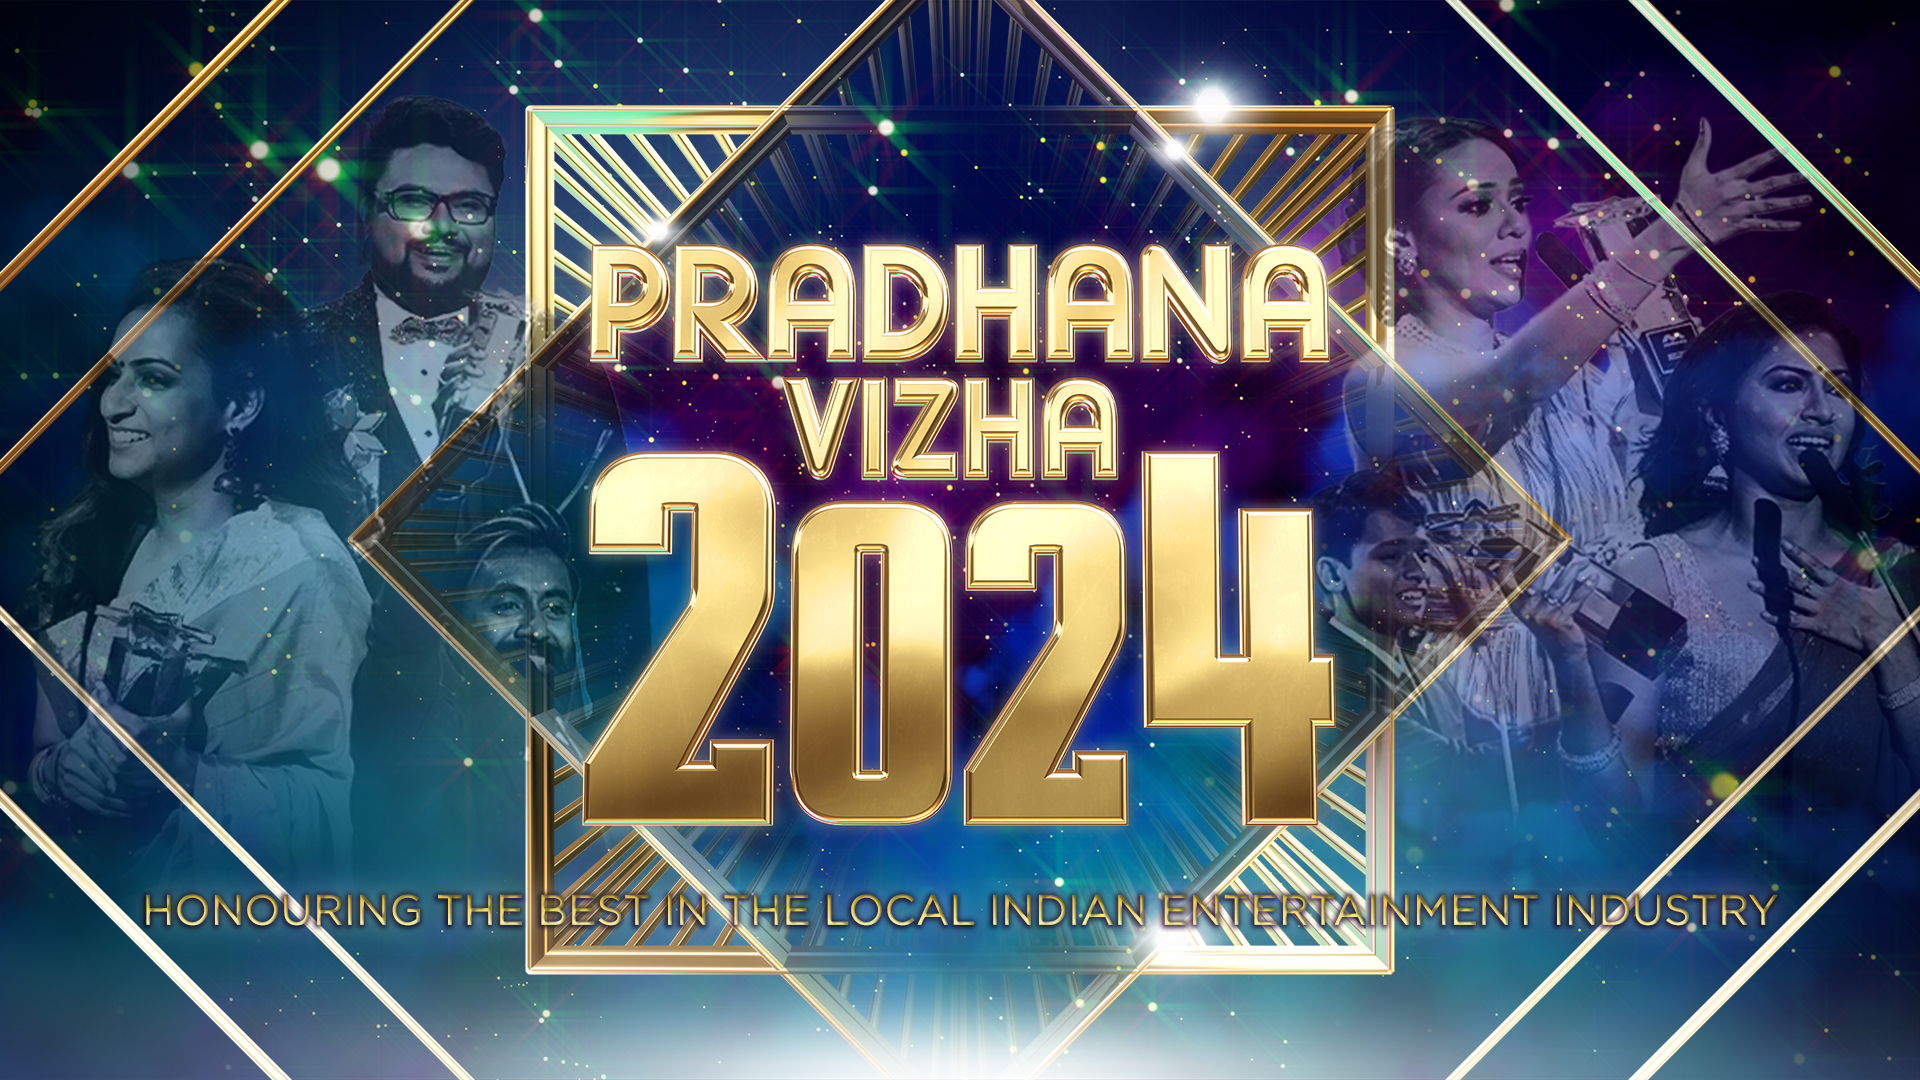 Pradhana Vizha